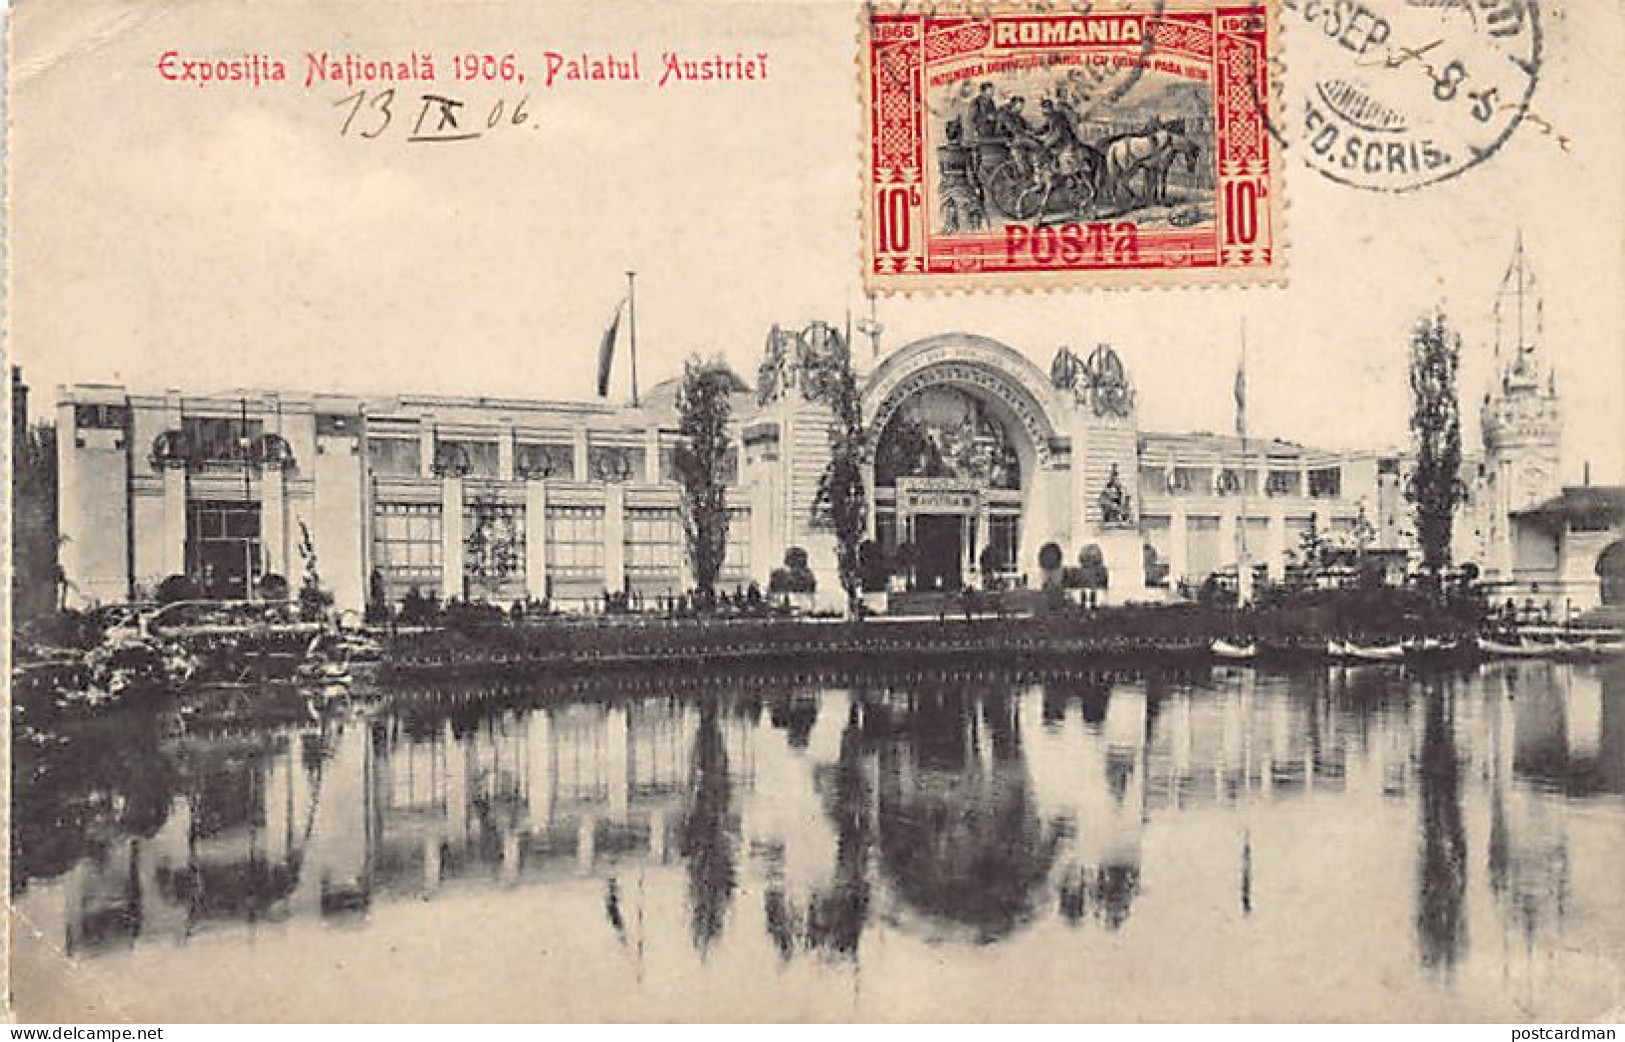 Romania - BUCURESTI - Expositia National 1906 - Palatul Austriei - Ed. Al. Antoniu - SOCEC  - Romania